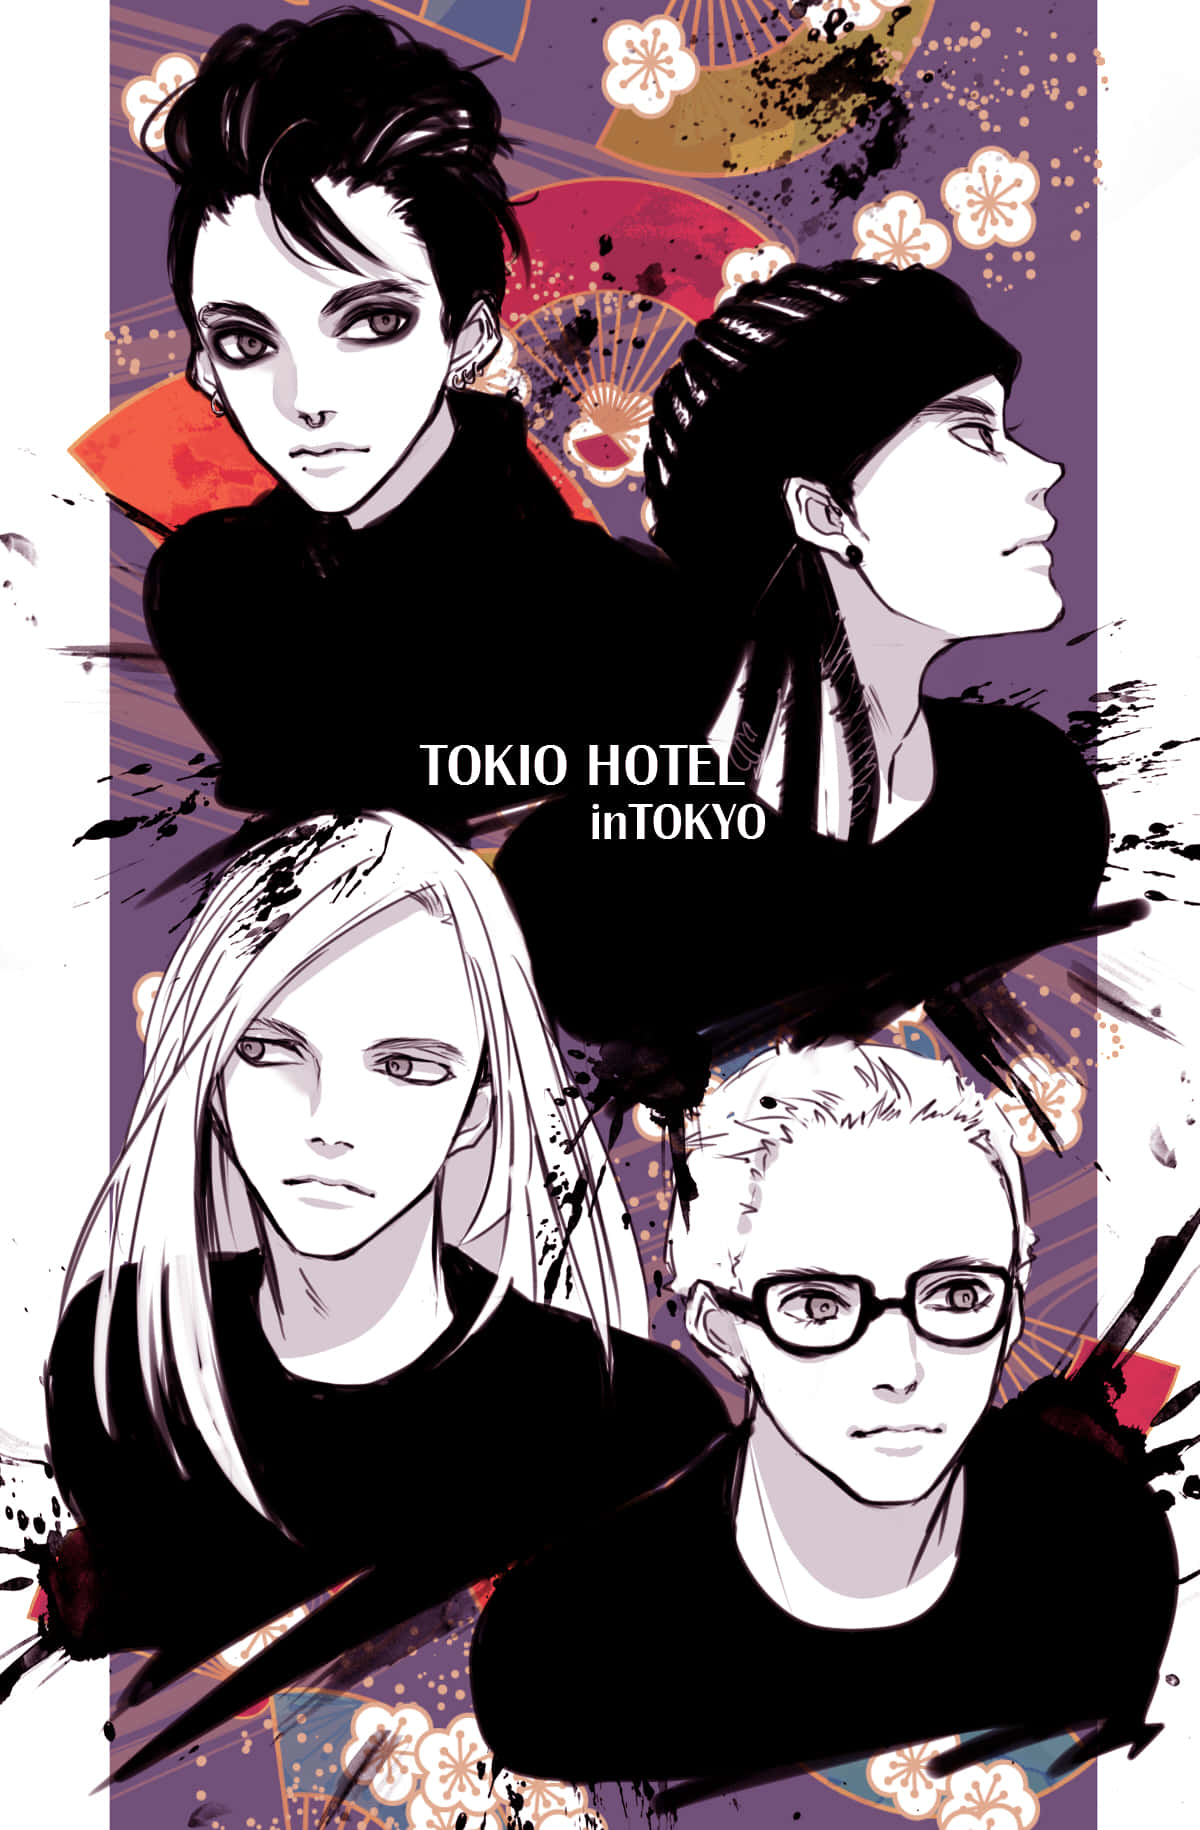 Tokio Hotel Anime Style Artwork Wallpaper